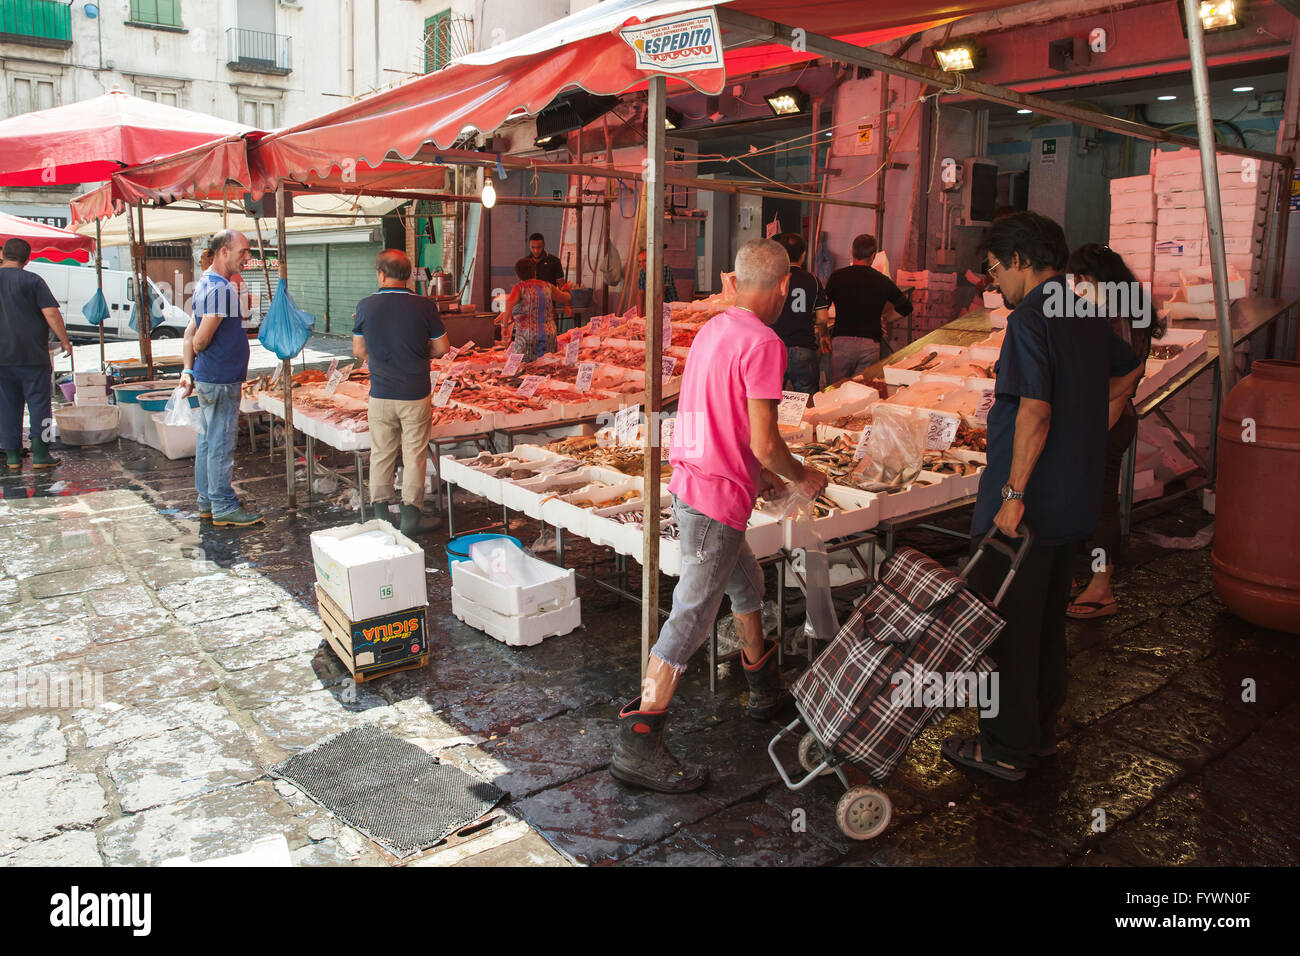 Neapel, Italien - 9. August 2015: Verschiedene Arten von Fisch lag auf den Ladentischen der Straße Marktplatz in Neapel, Käufer warten auf Kunden Stockfoto